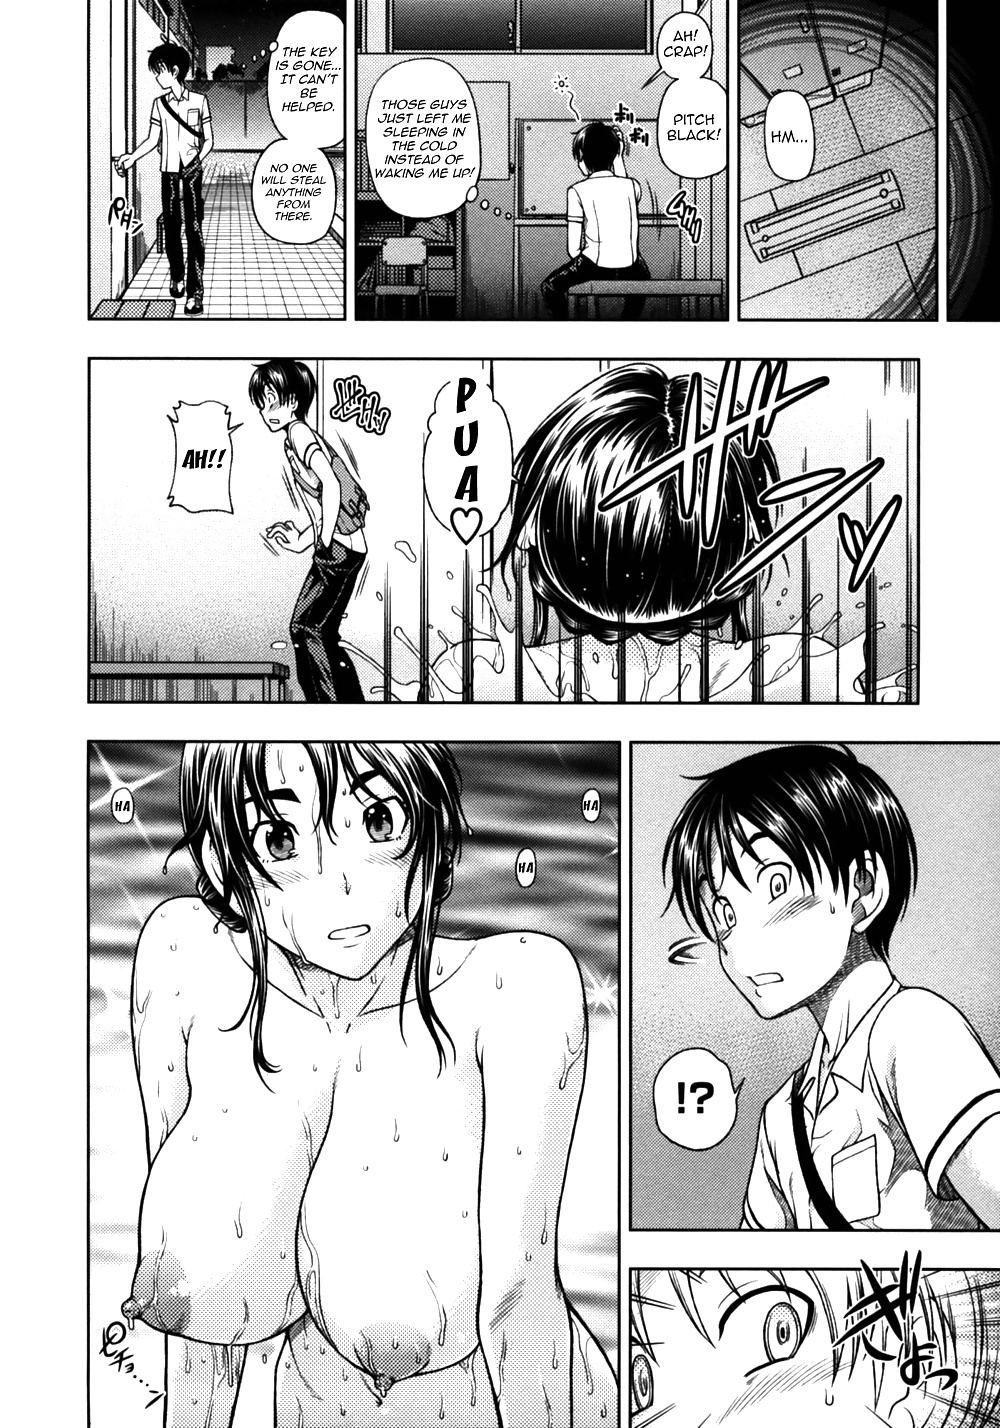 (fumetto hentai) fukudada opere erotiche #3
 #29623139